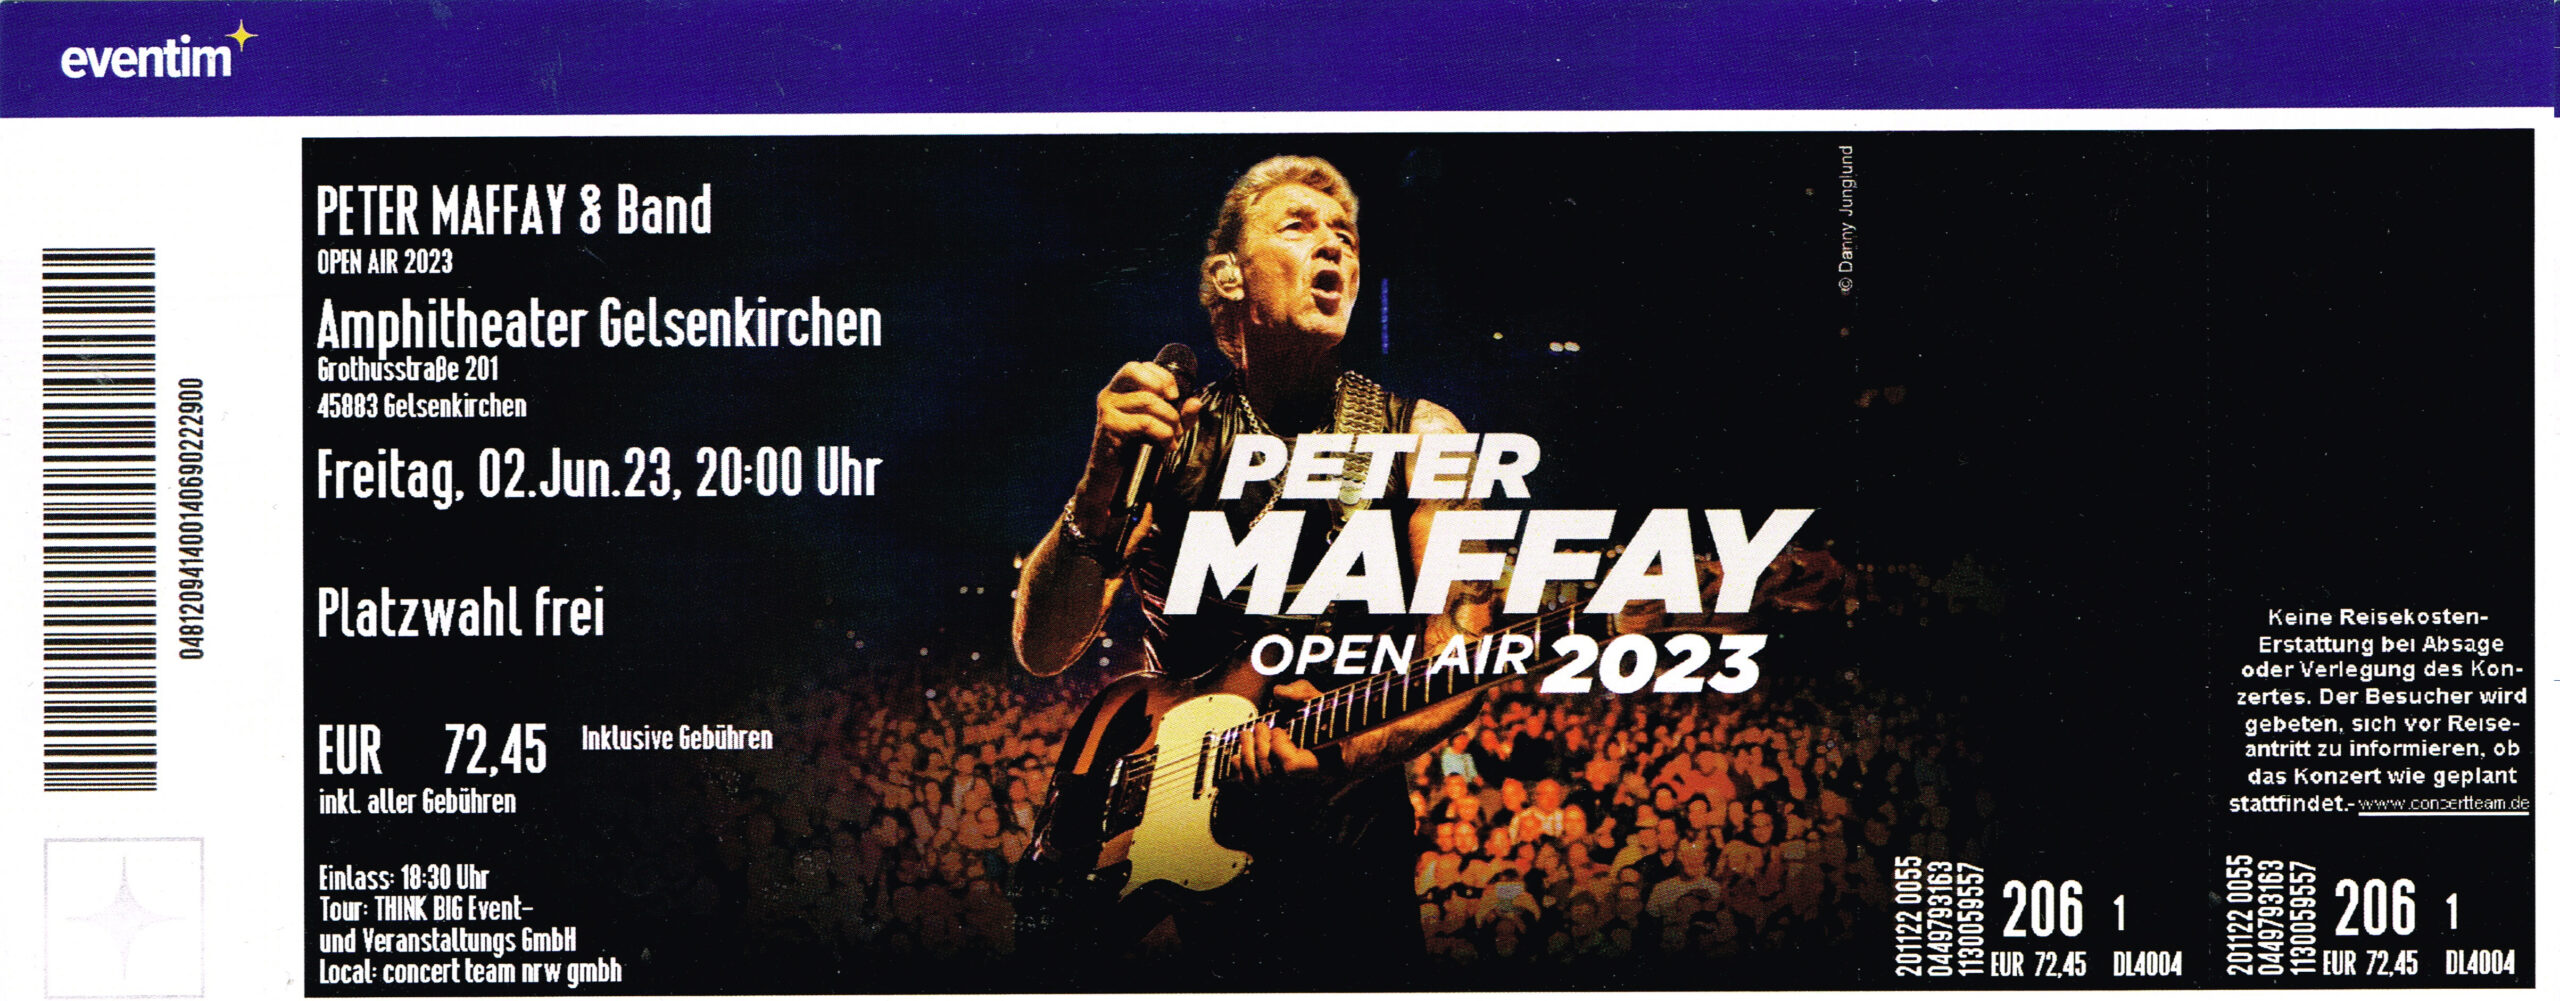 02.06.2023 – Peter Maffay @Gelsenkirchen/Amphitheater